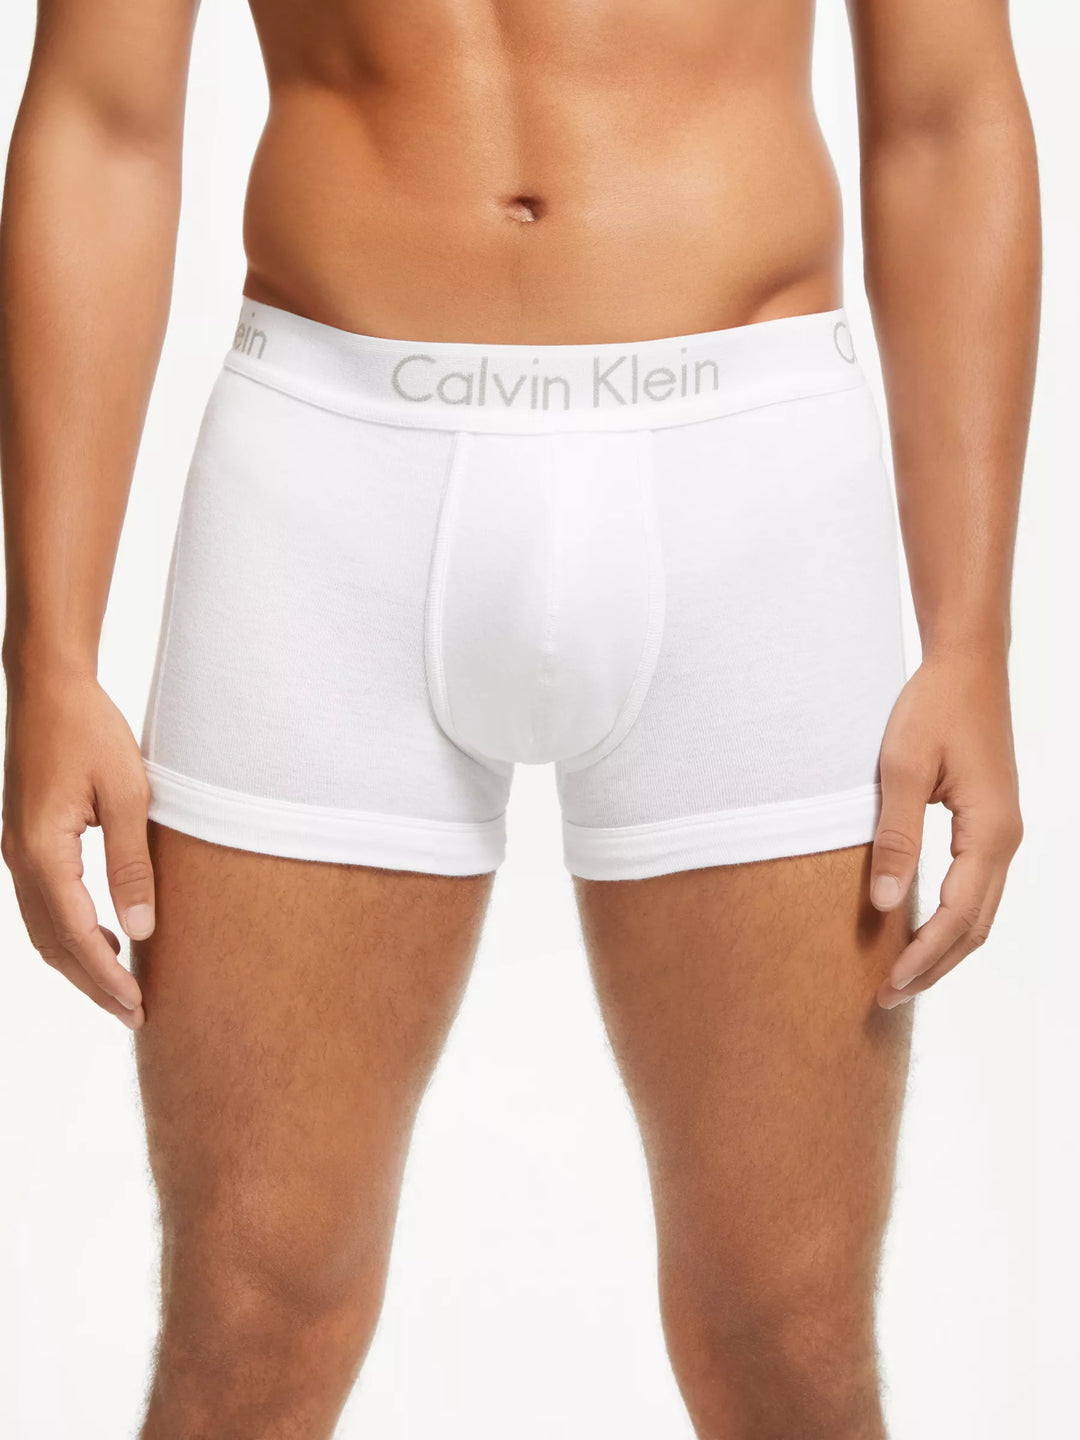 Calvin Klein Men's Underwear Body Trunk - White